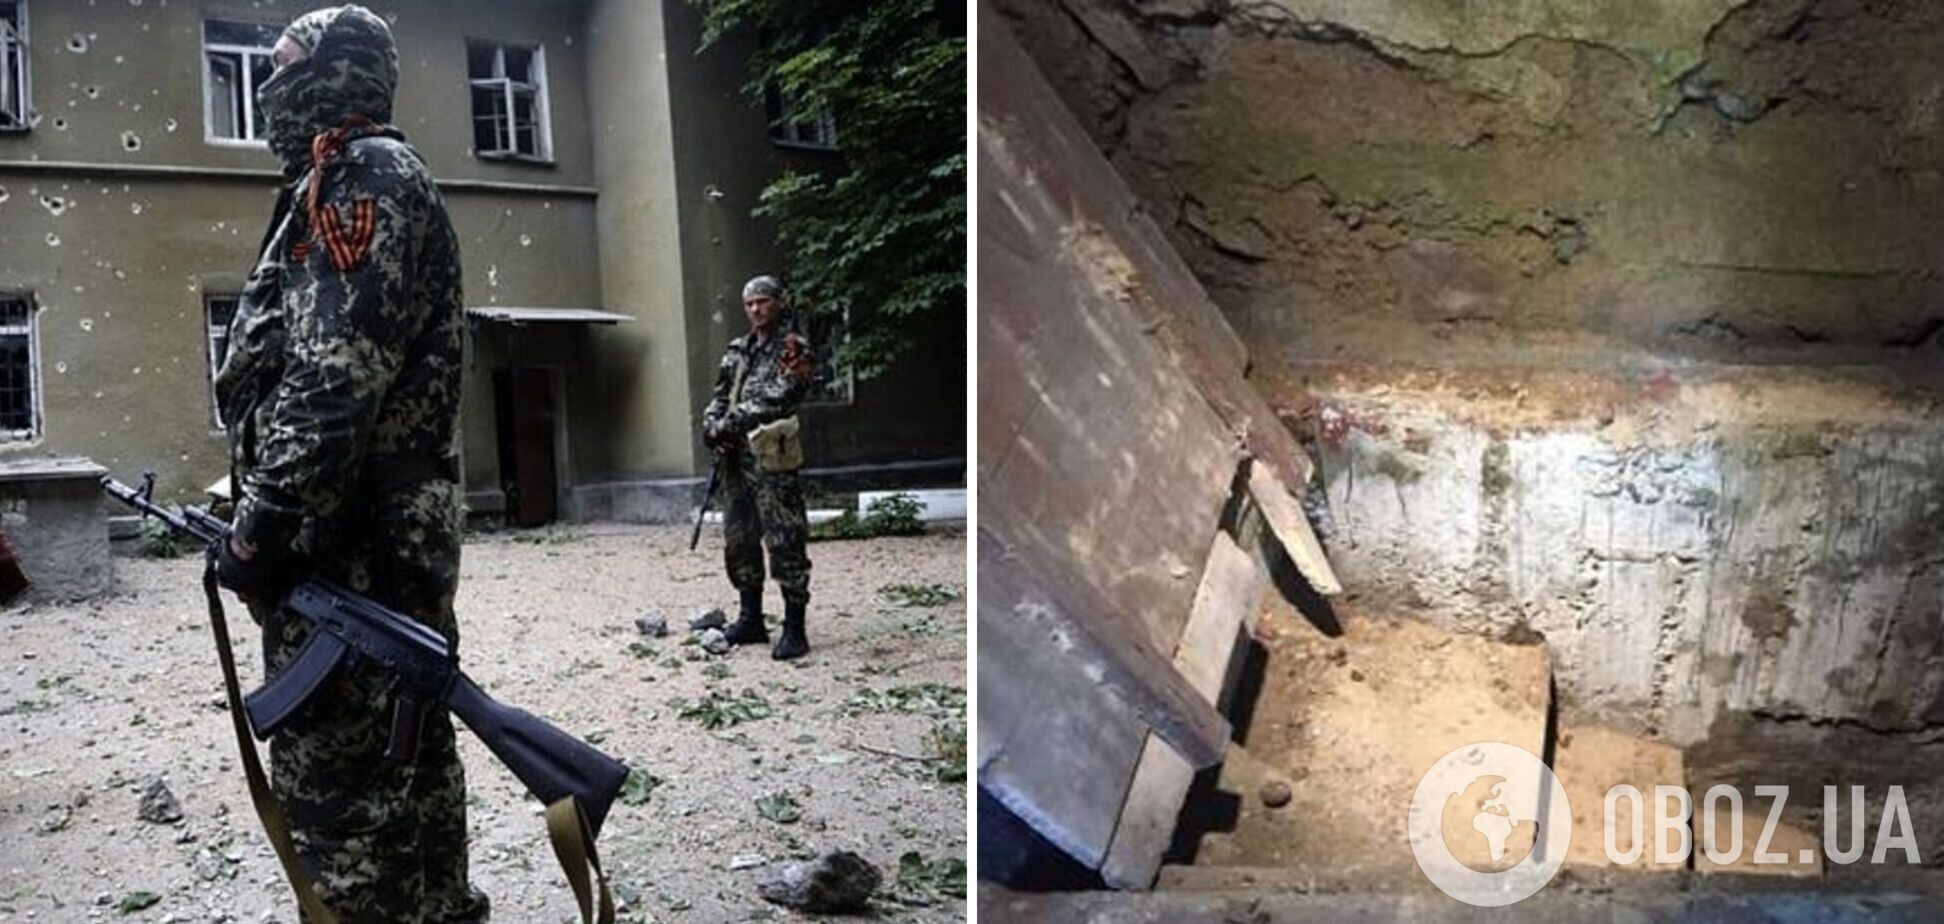 'Держали в подвале и требовали деньги у жены': вояки 'ДНР' избили и бросили на подвал российского военного. Перехват